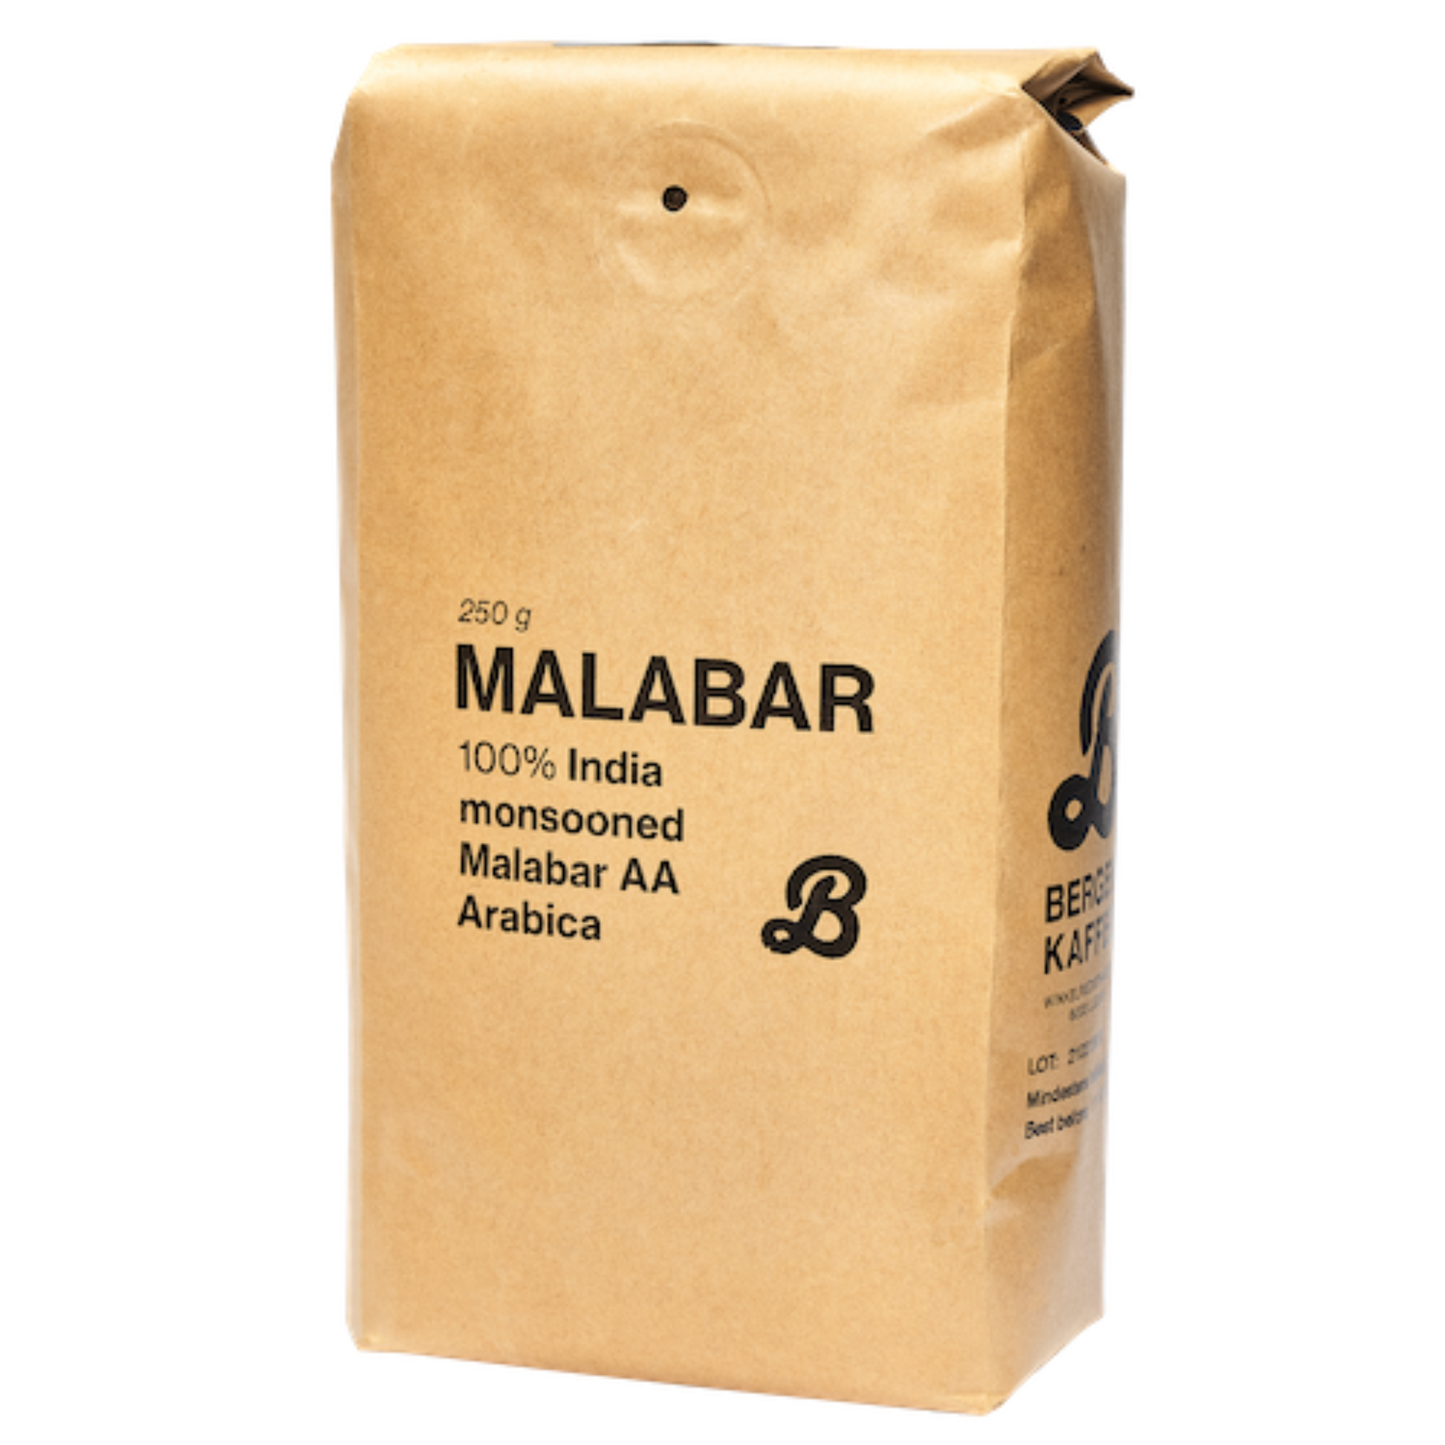 Bergen Kaffee Monsooned Malabar AA